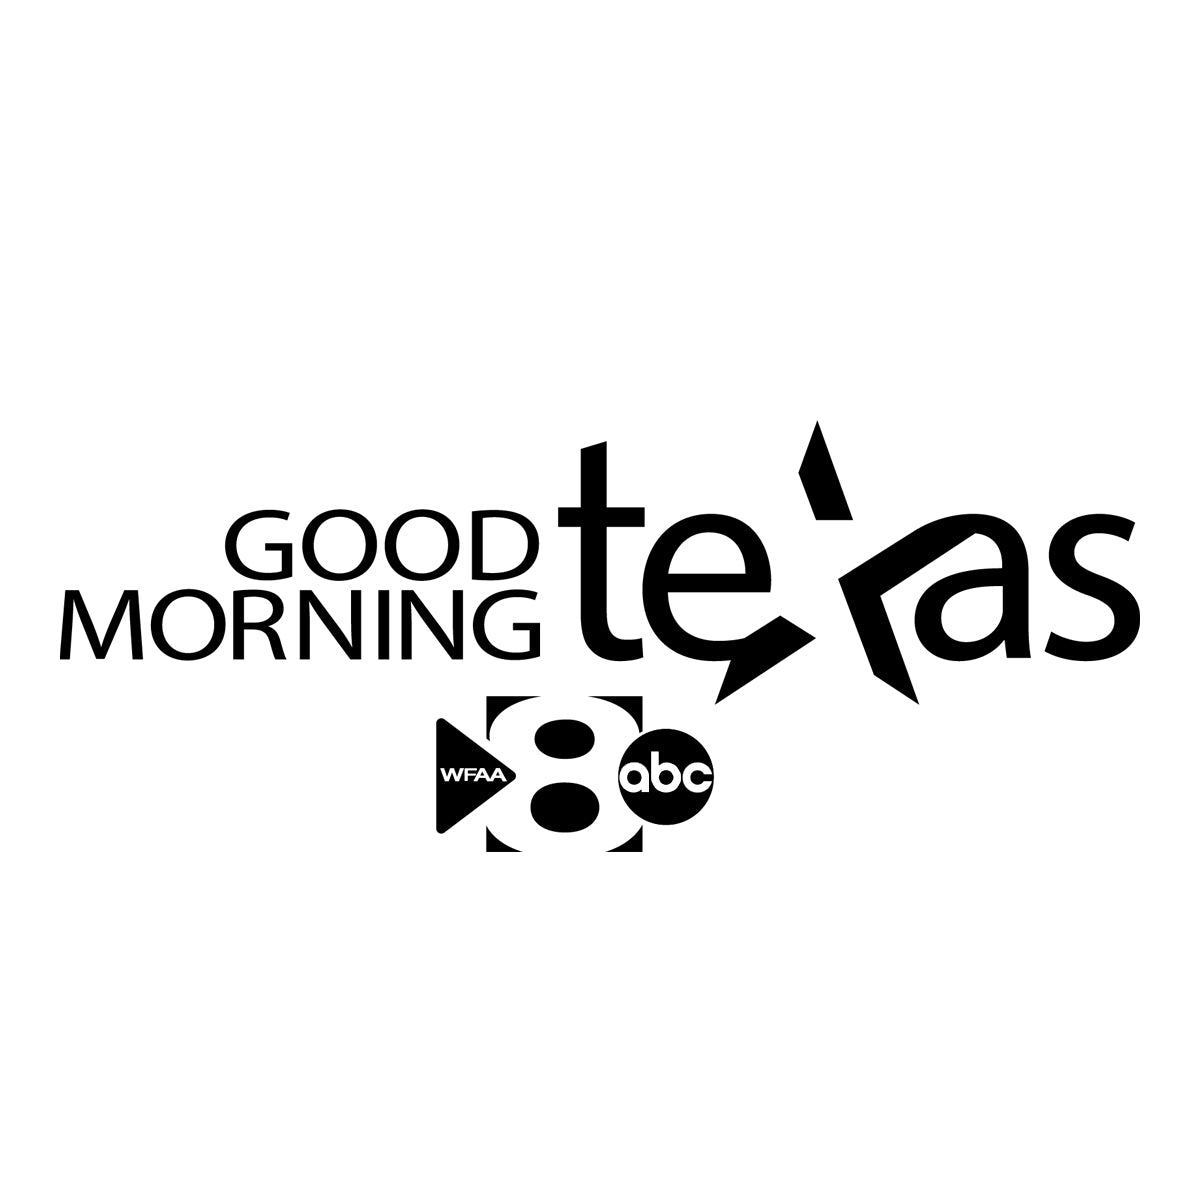 Good Morning Texas Logo - Designs By Andrea